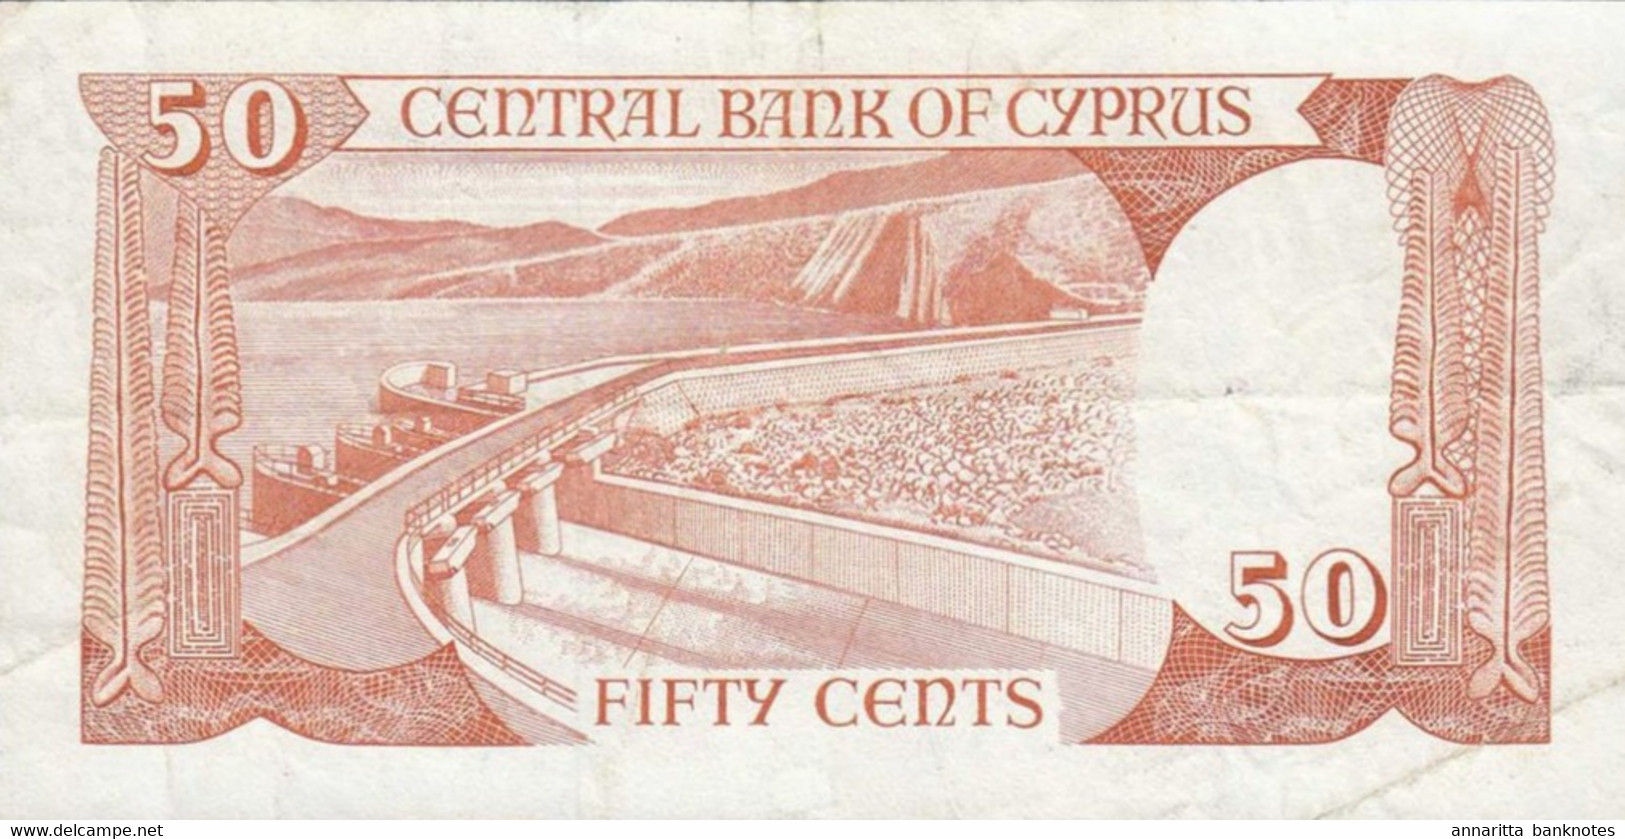 Cyprus 50 Cents 1989, S/N P324890 VF, P-52a, CY B311c - Zypern